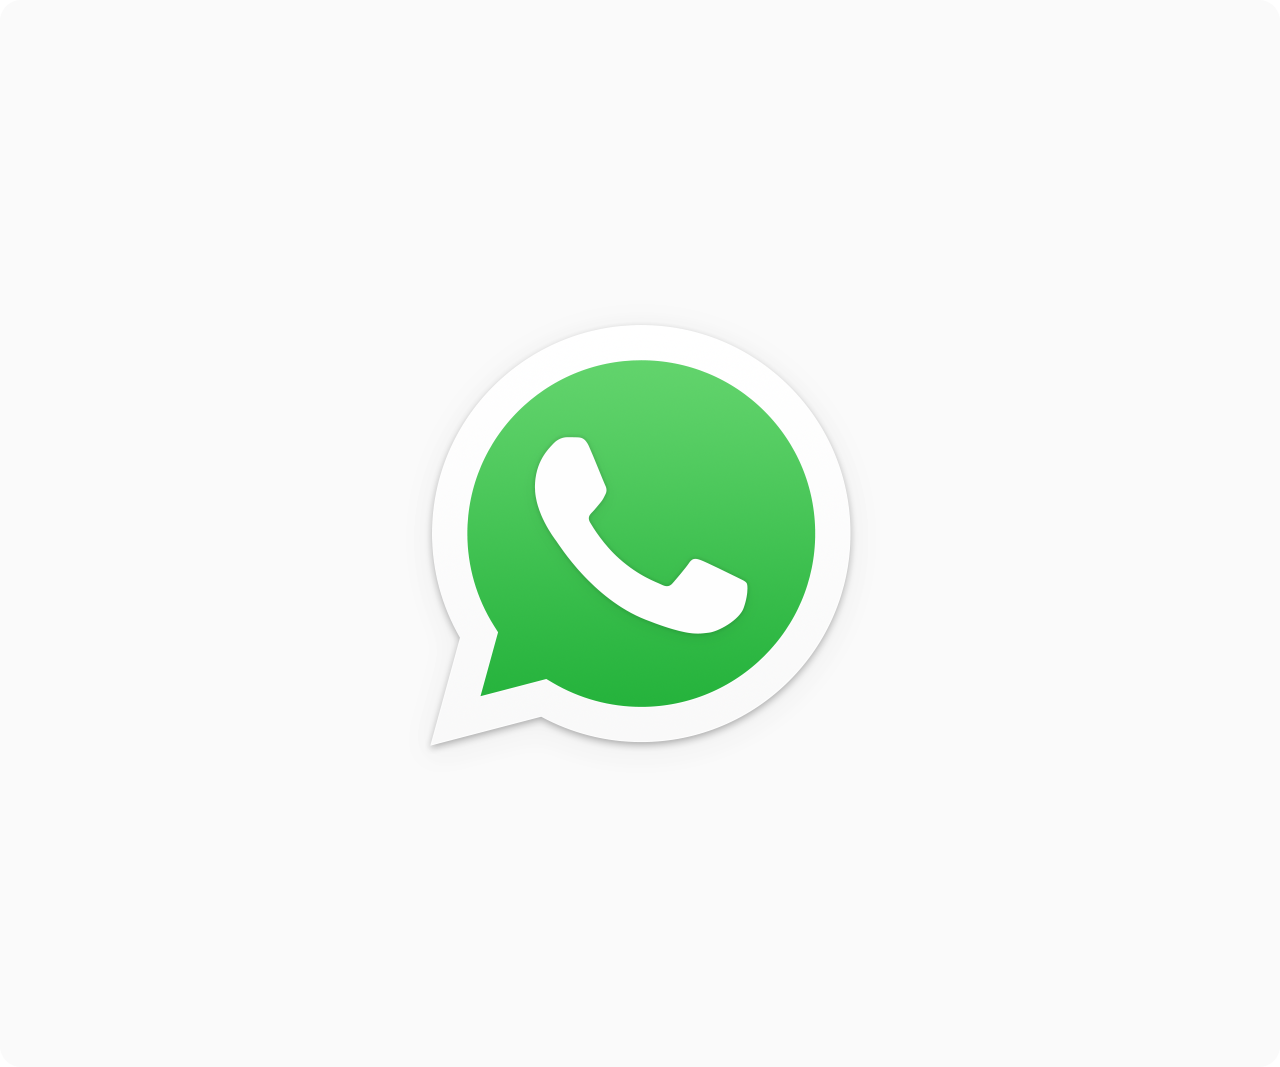 WhatsApp इन स्मार्टफोन में नही करेगा सपोर्ट, जानें खास बातें